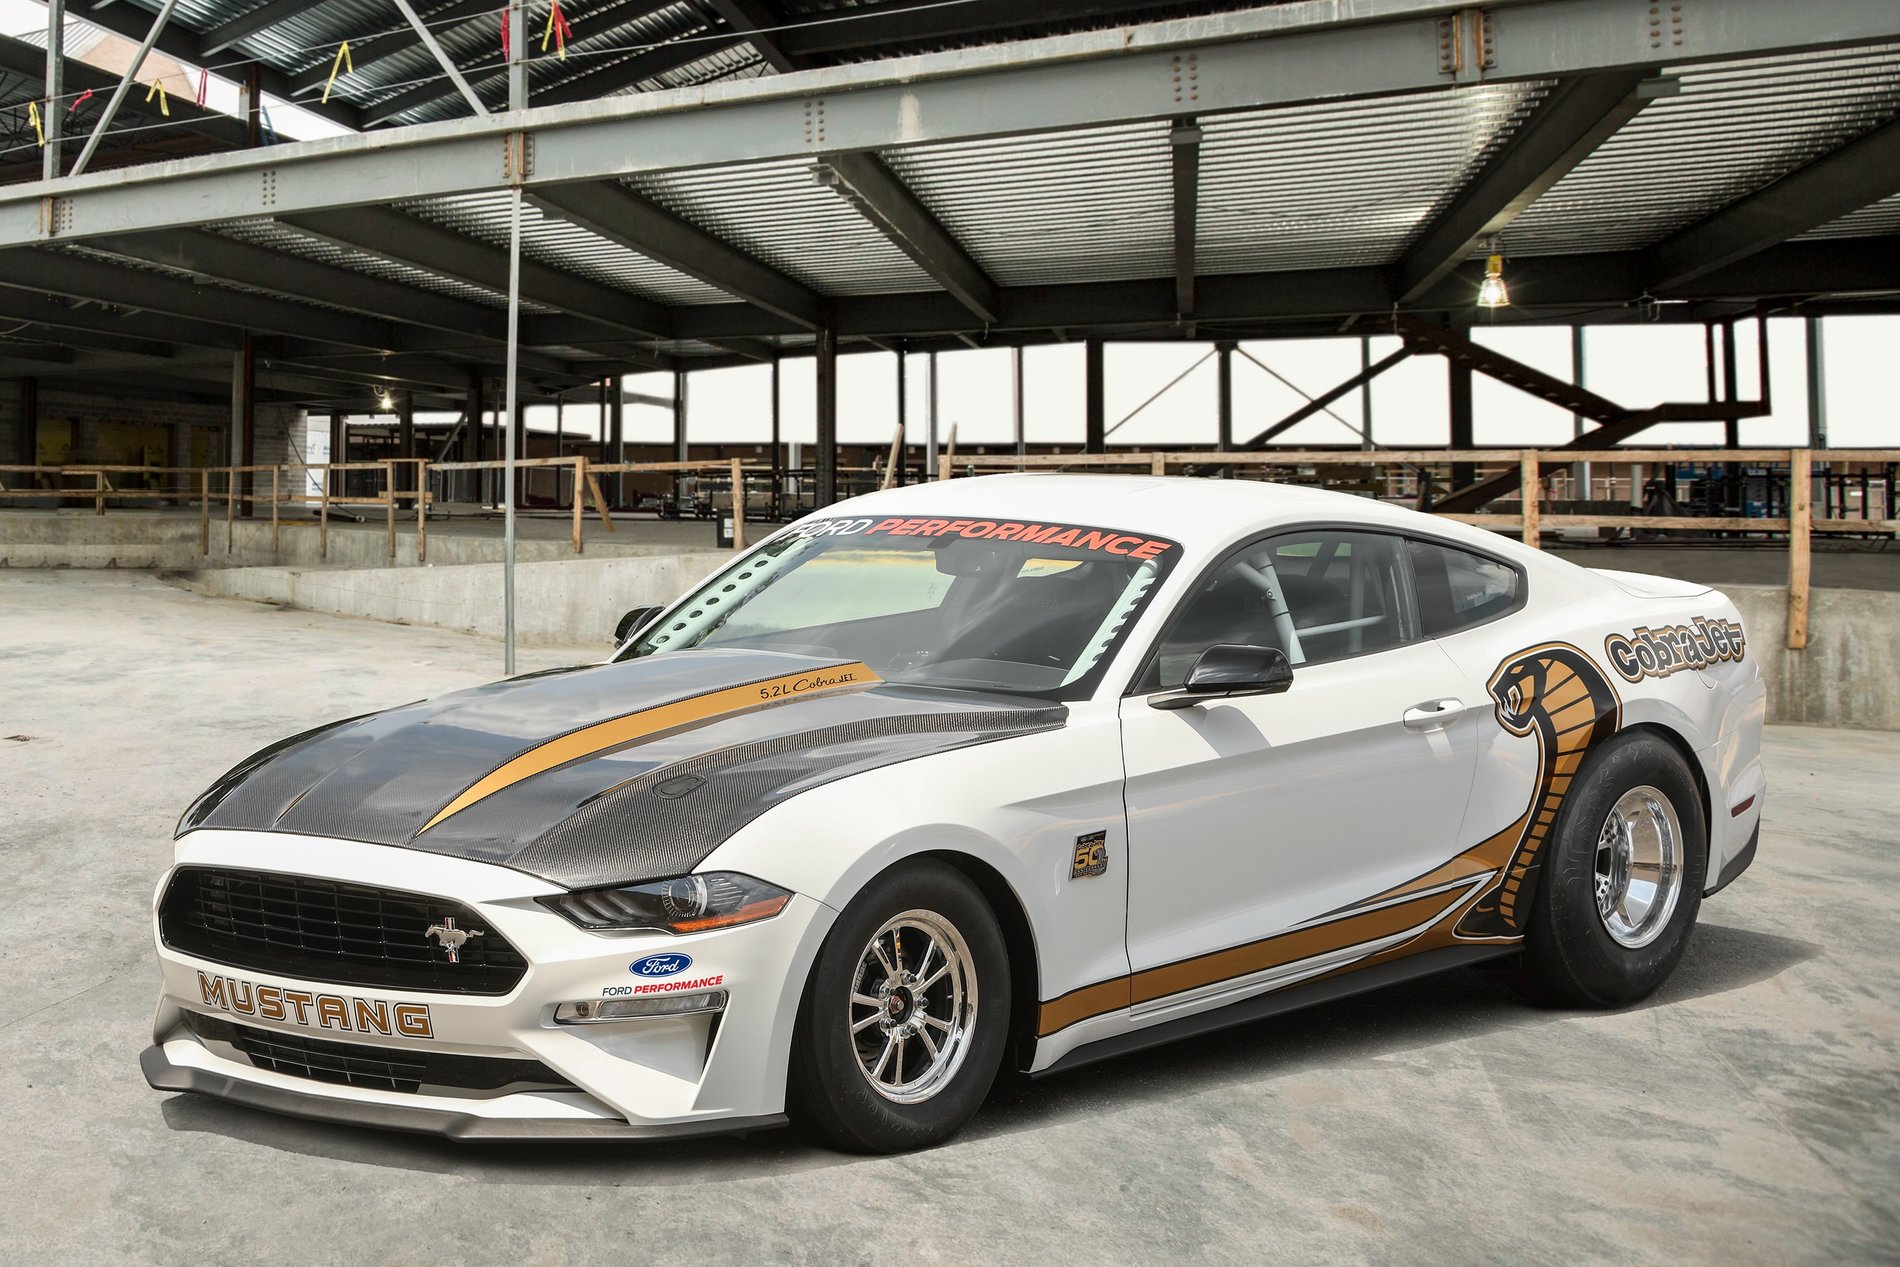 2019 Mustang GT Drag Pack Page 2 2015+ S550 Mustang Forum (GT, EcoBoost, GT350, GT500, Bullitt, Mach 1)